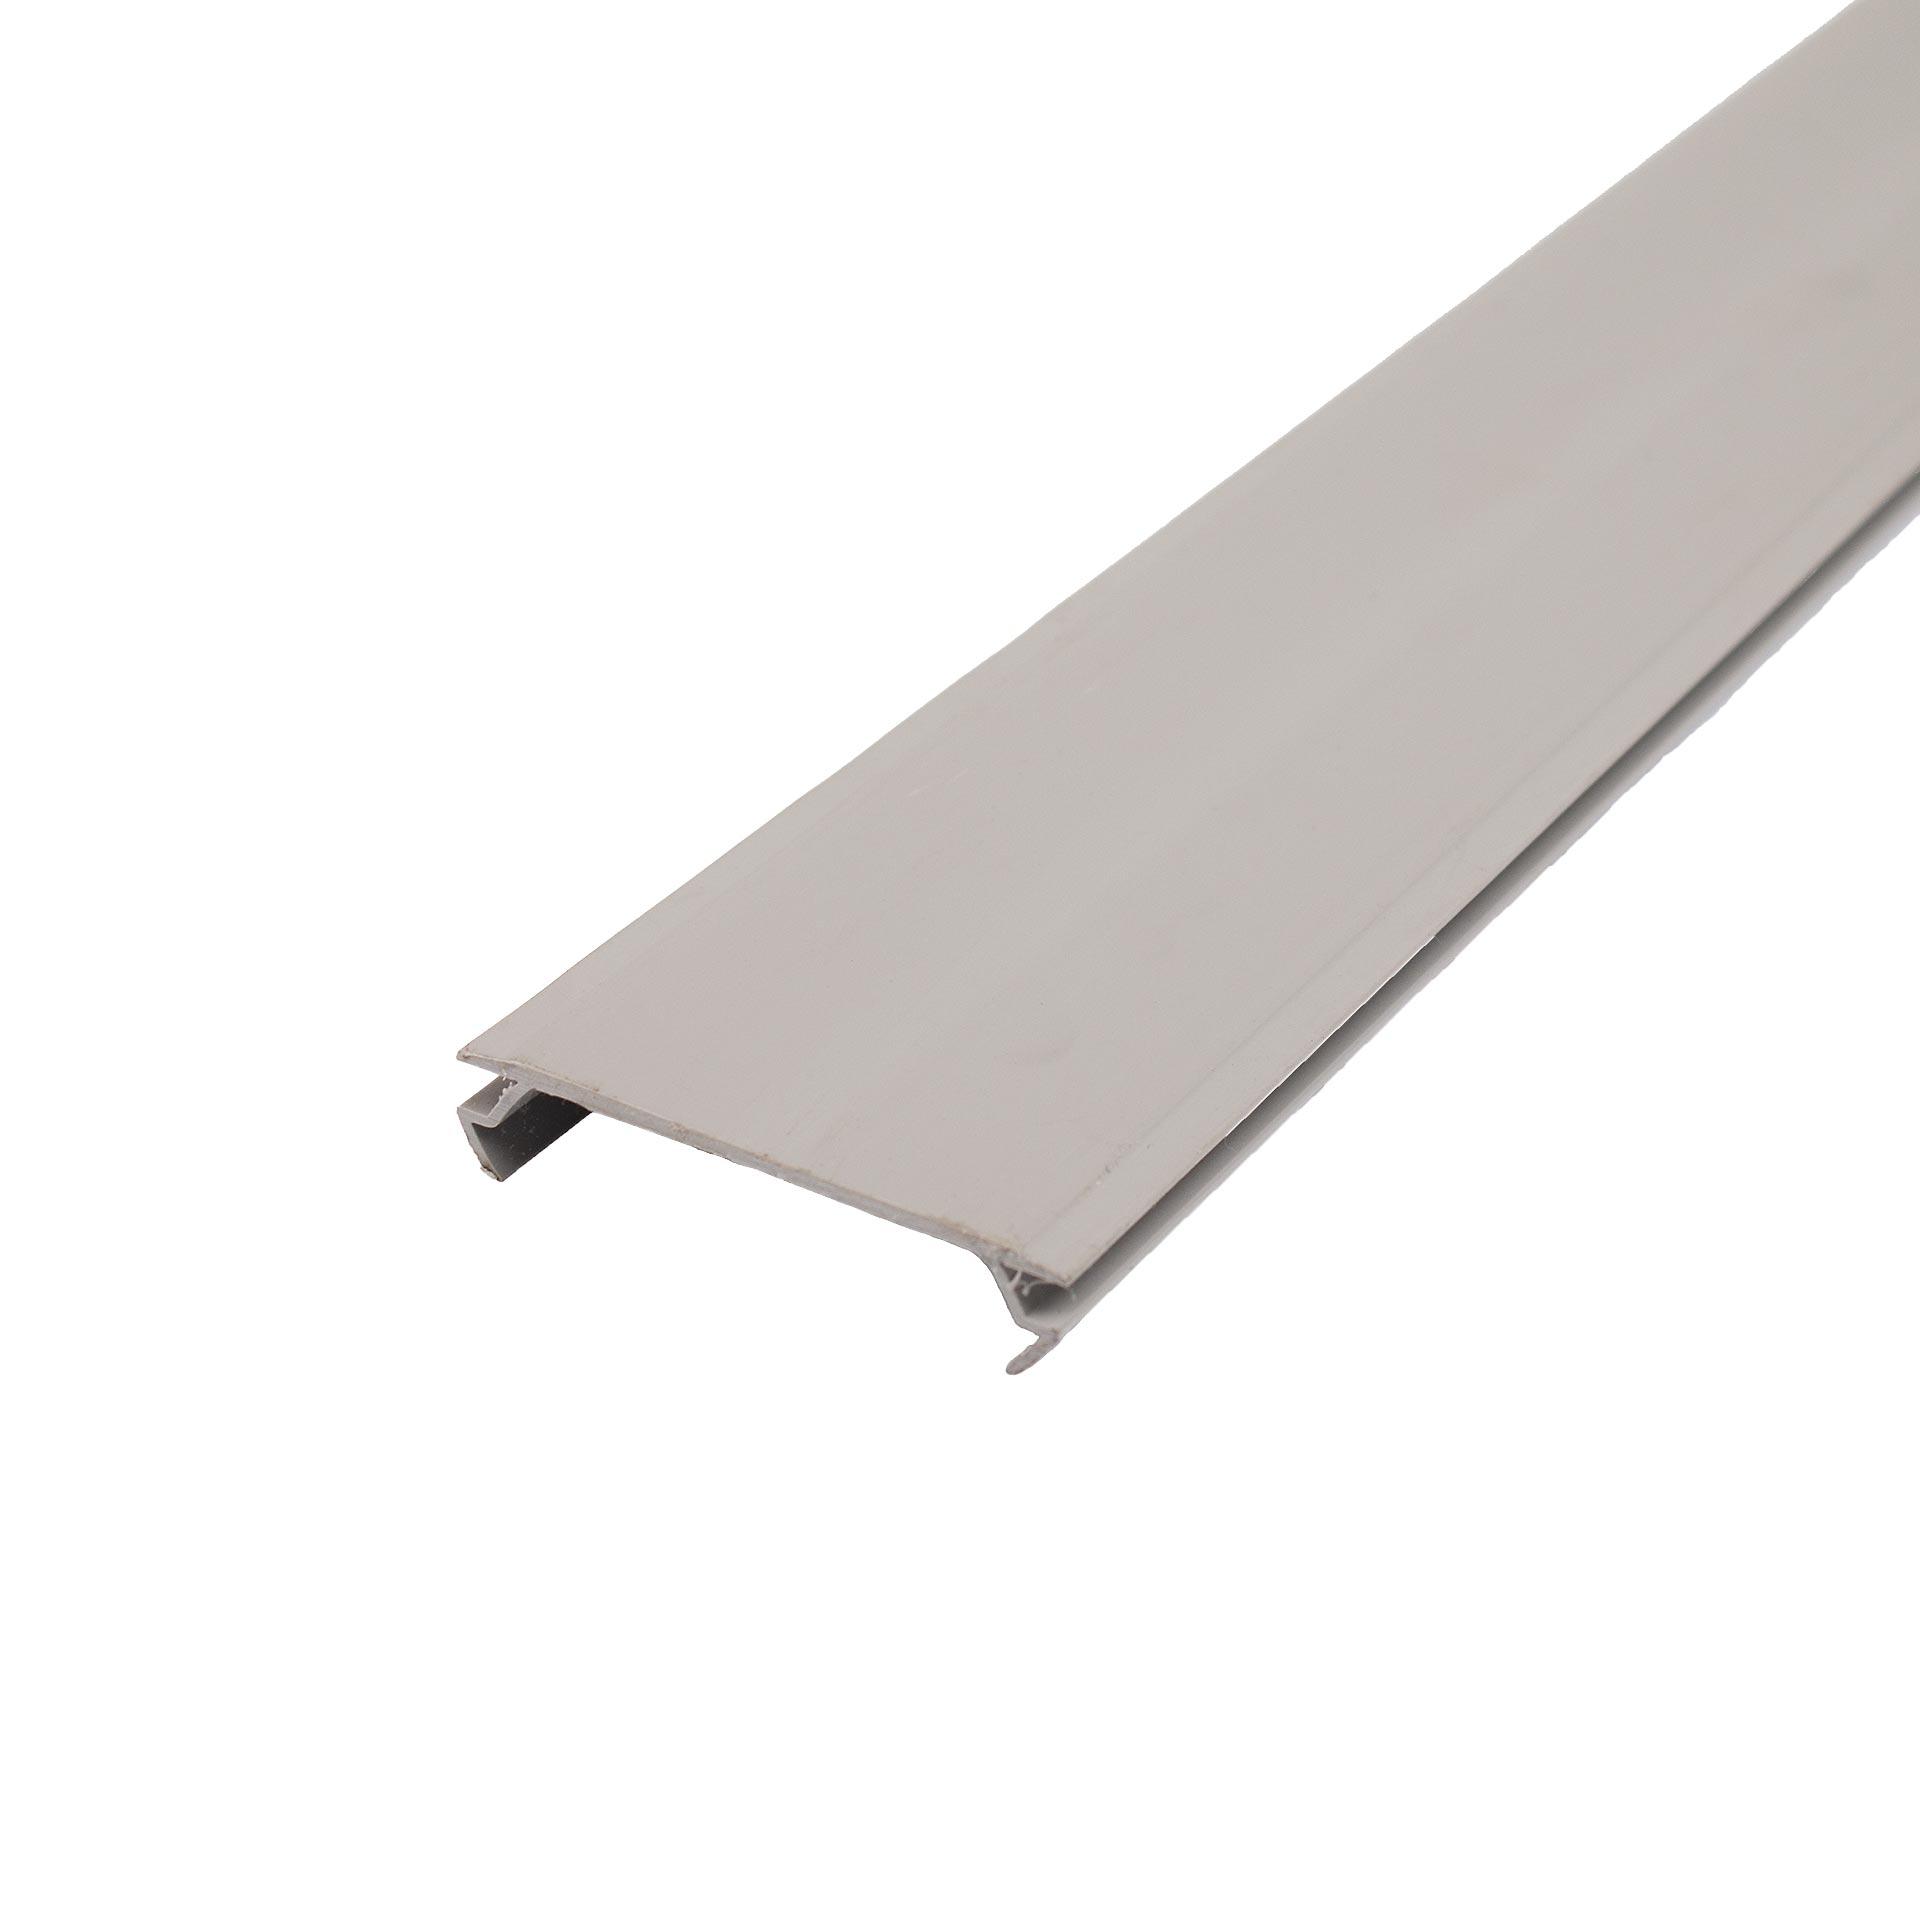 Profil obturateur, PVC gris foncé, 2 mètres de long